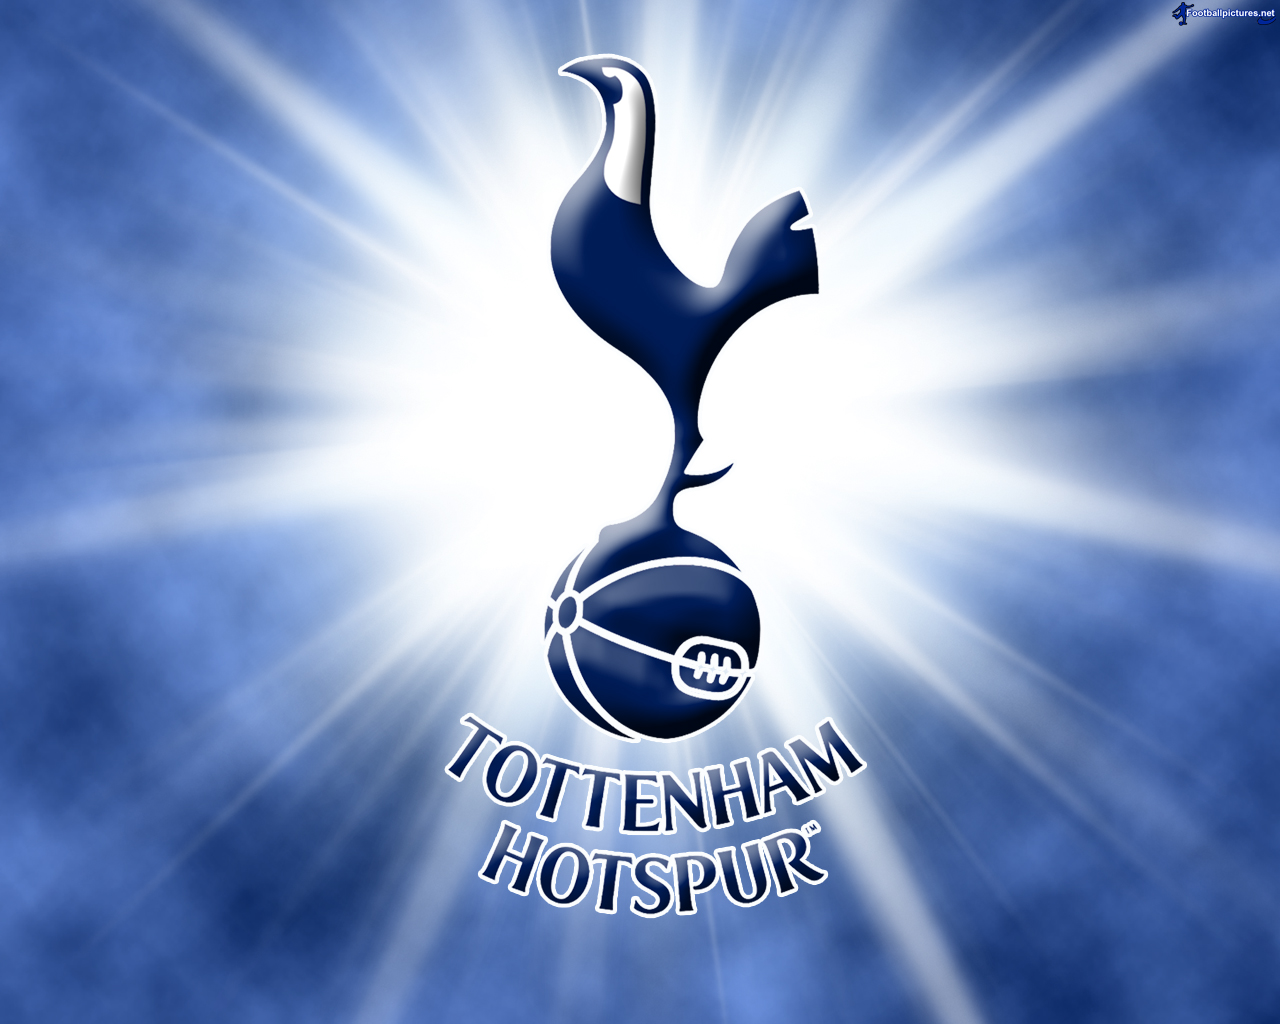 Tottenham hotspur Logos